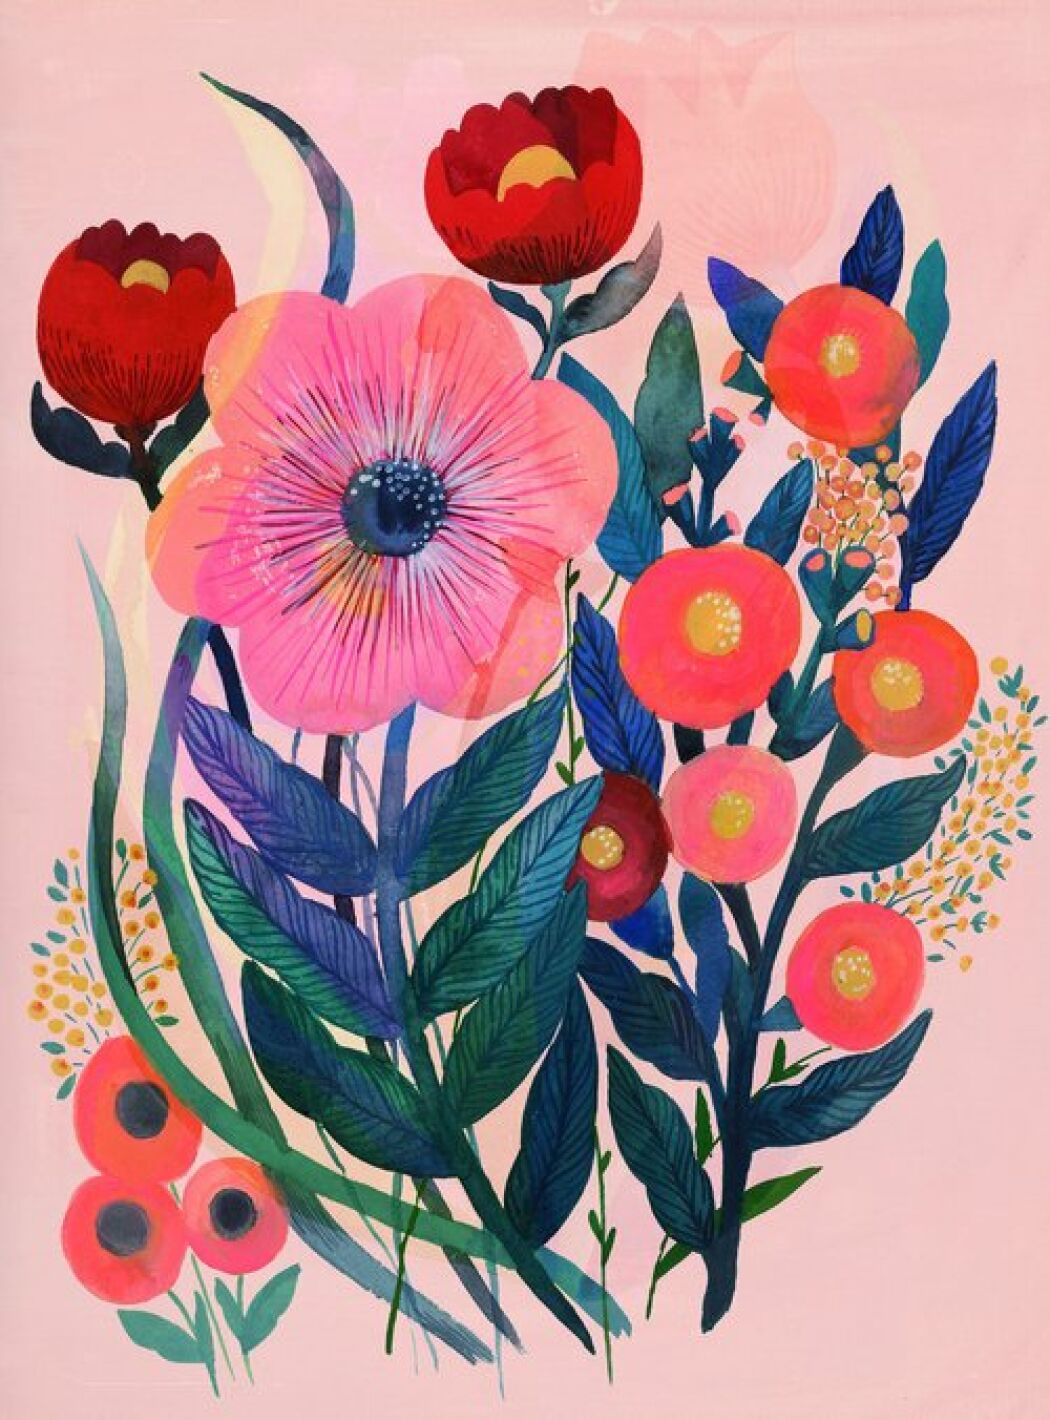 Botanical art work by Malin Gyllensvaan